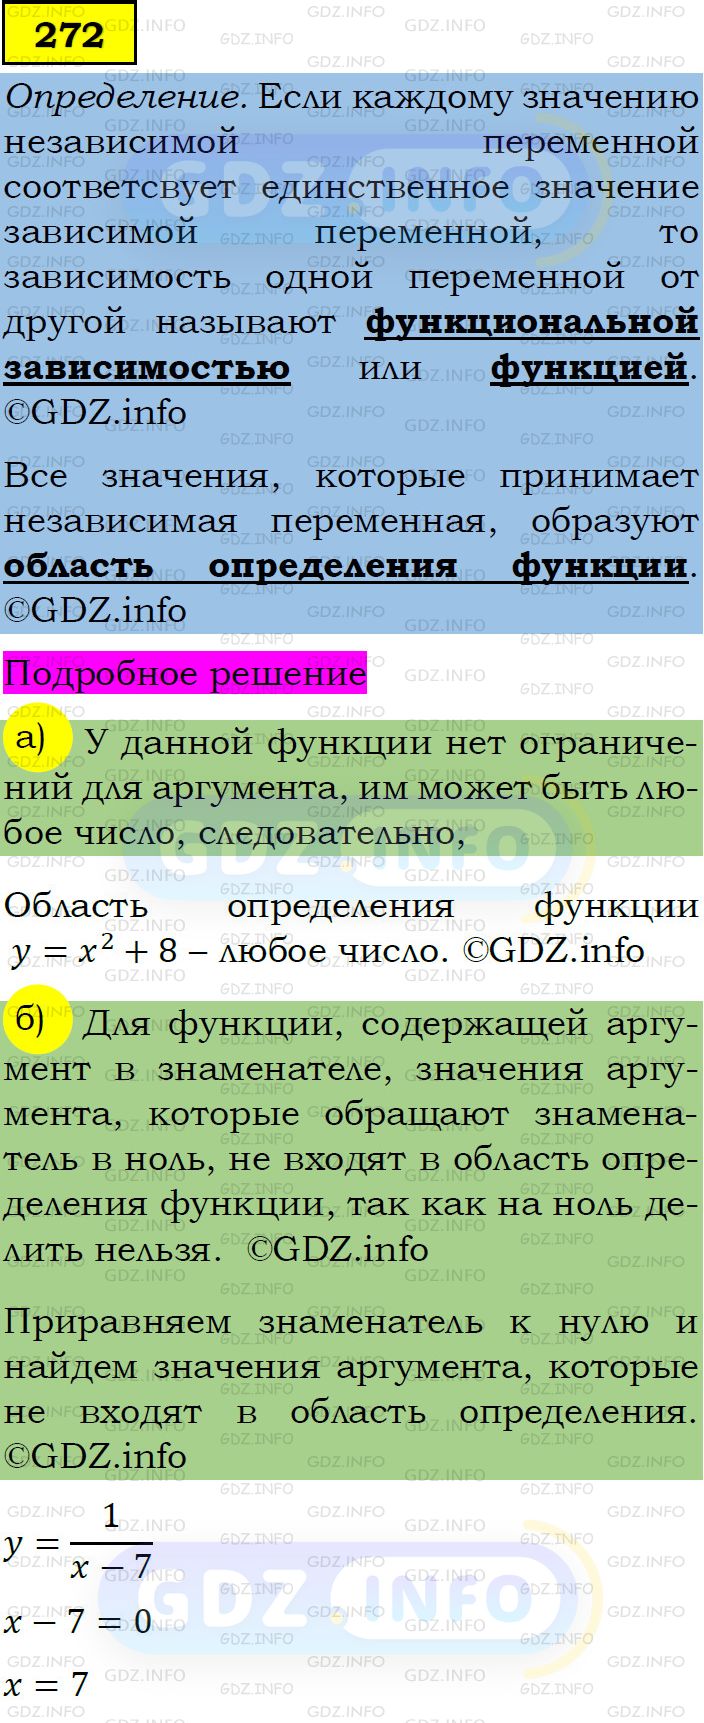 Фото подробного решения: Номер задания №272 из ГДЗ по Алгебре 7 класс: Макарычев Ю.Н.